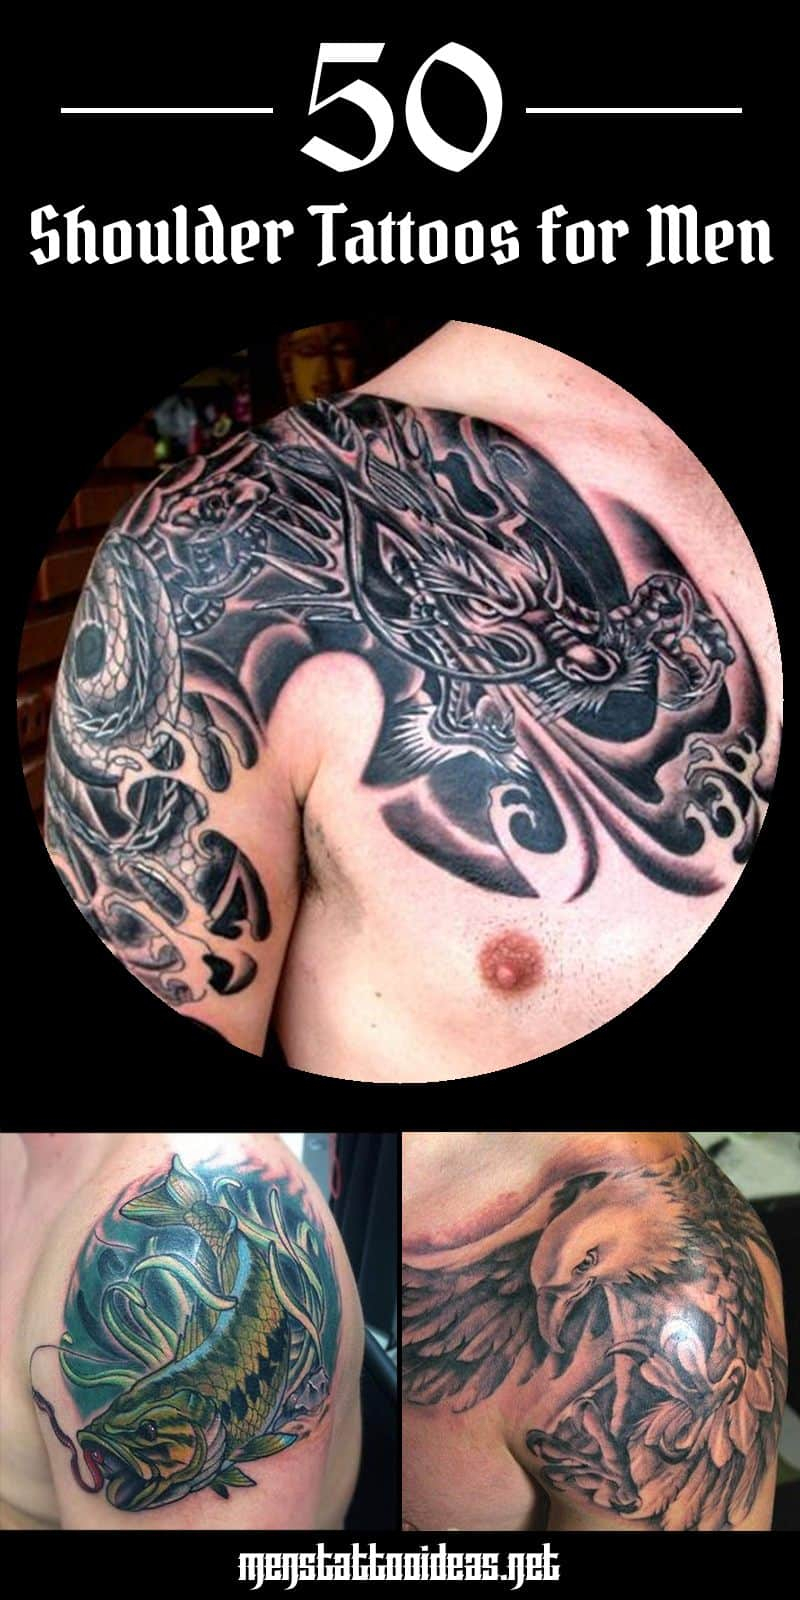 Shoulder Tattoos For Men Designs On Shoulder For Guys intended for dimensions 800 X 1600